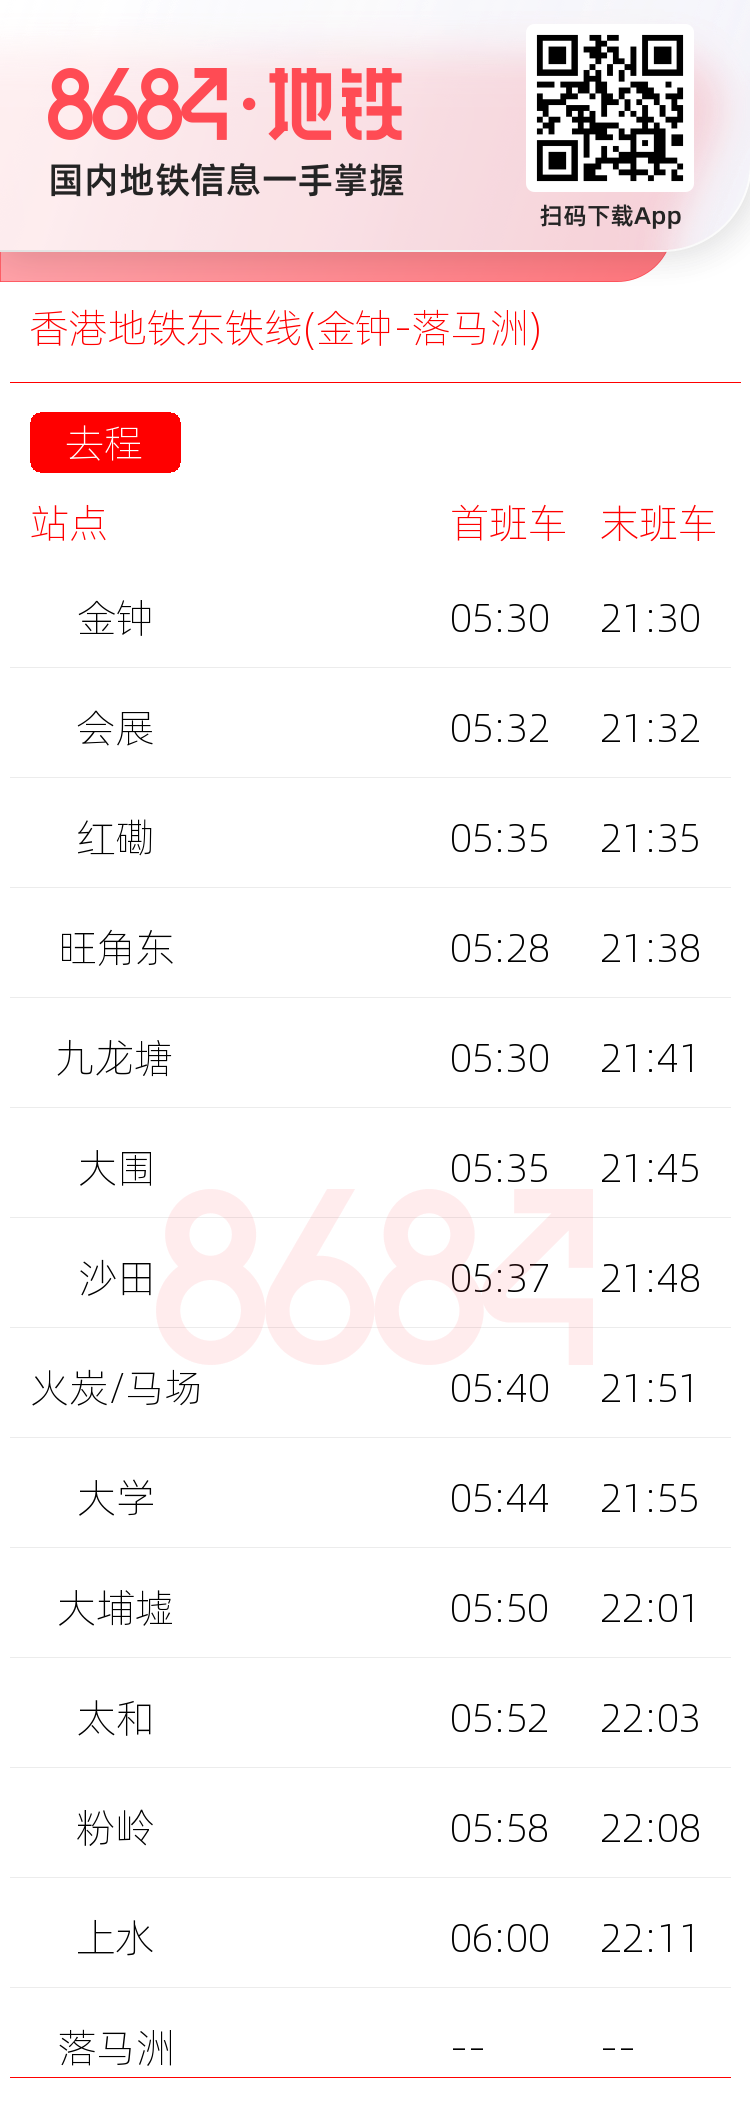 香港地铁东铁线(金钟-落马洲)运营时间表